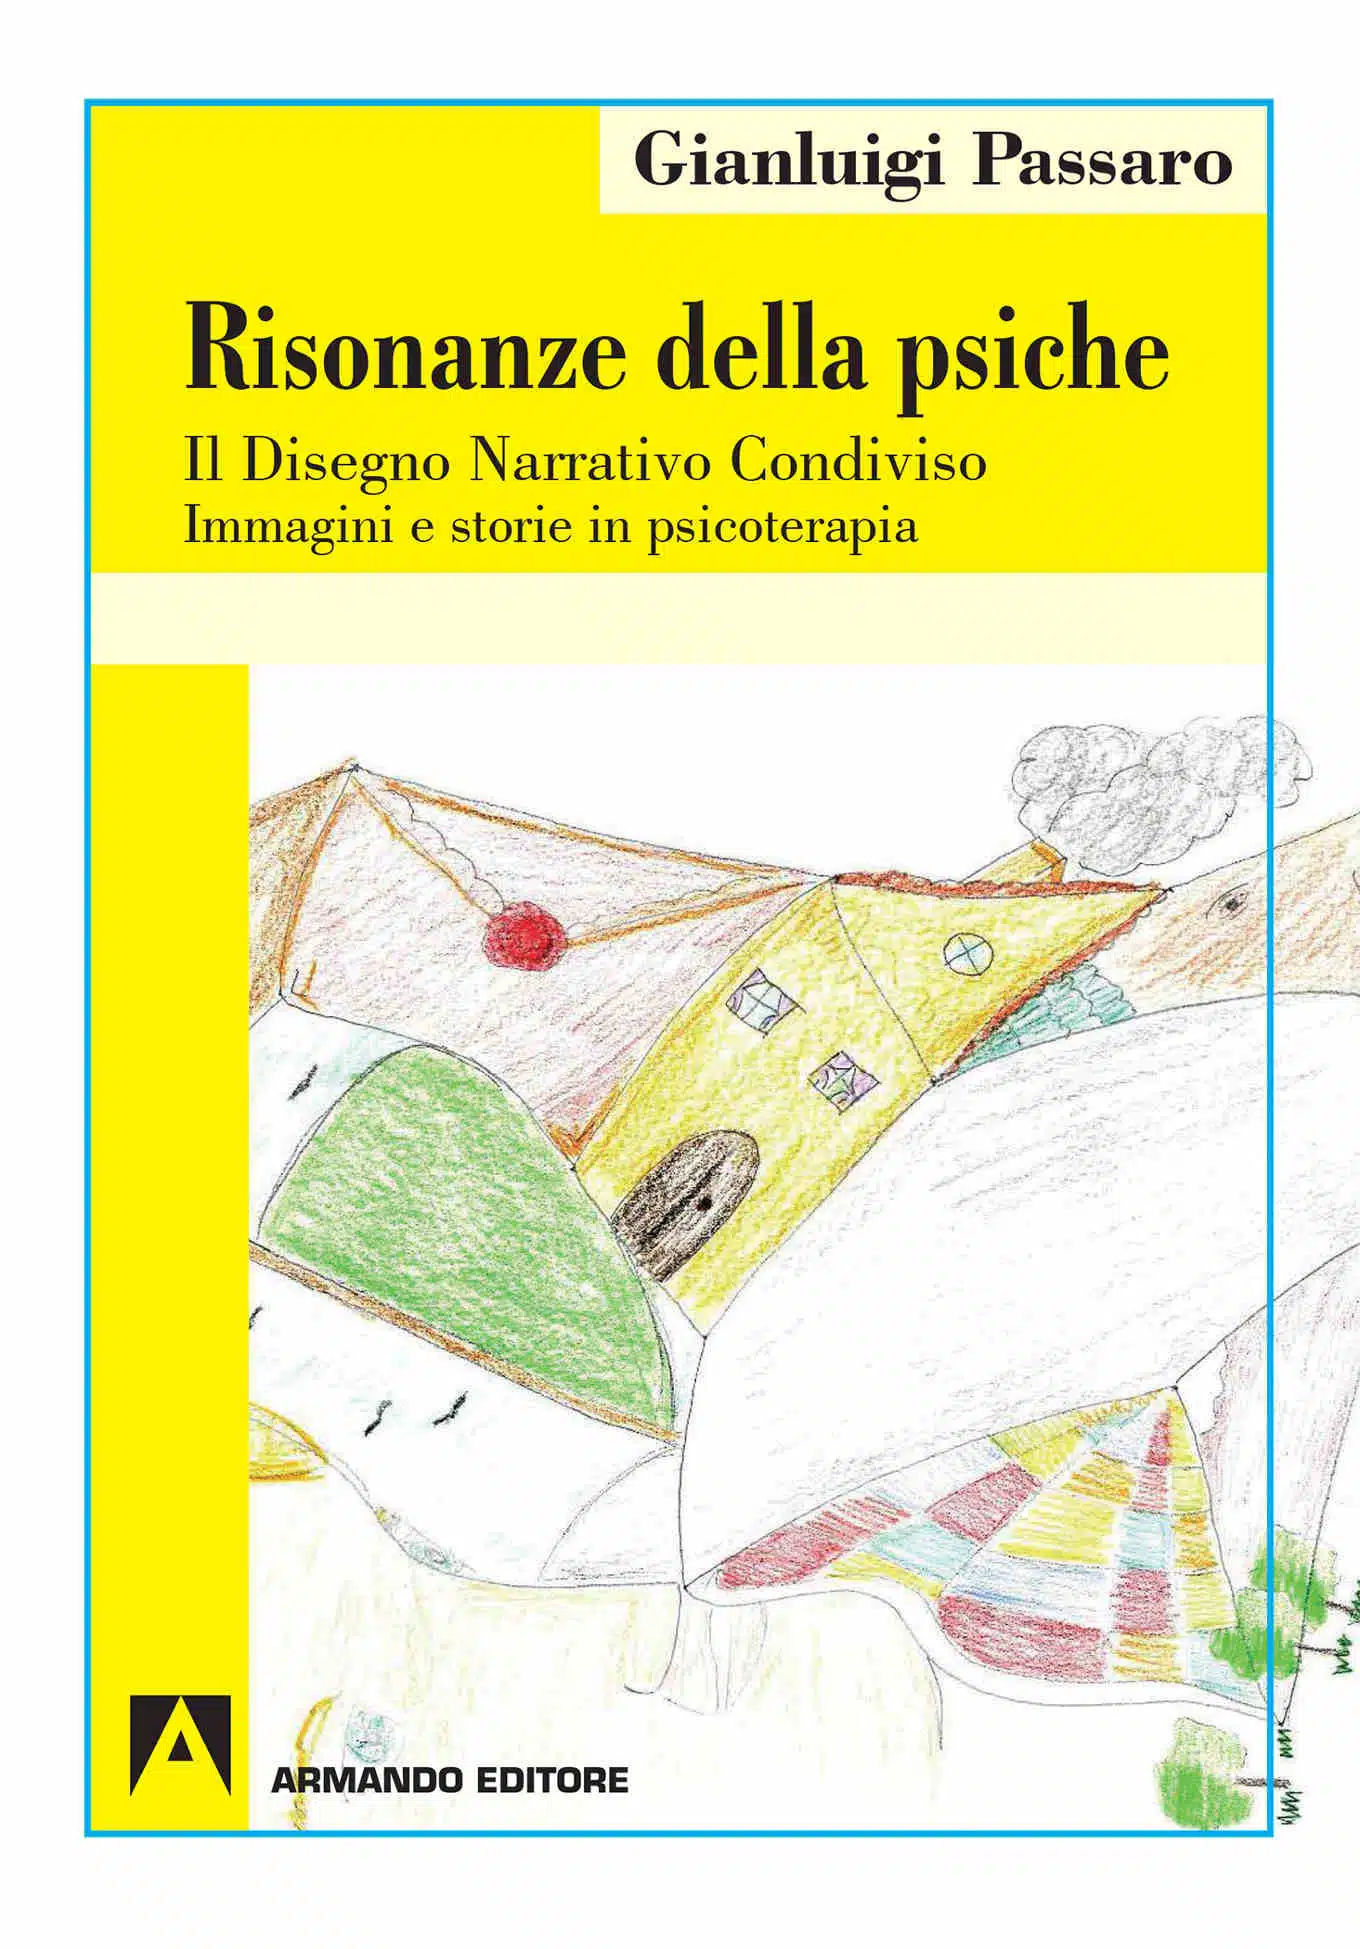 Risonanze della psiche (2019) di Gianluigi Passaro - Recensione del libro